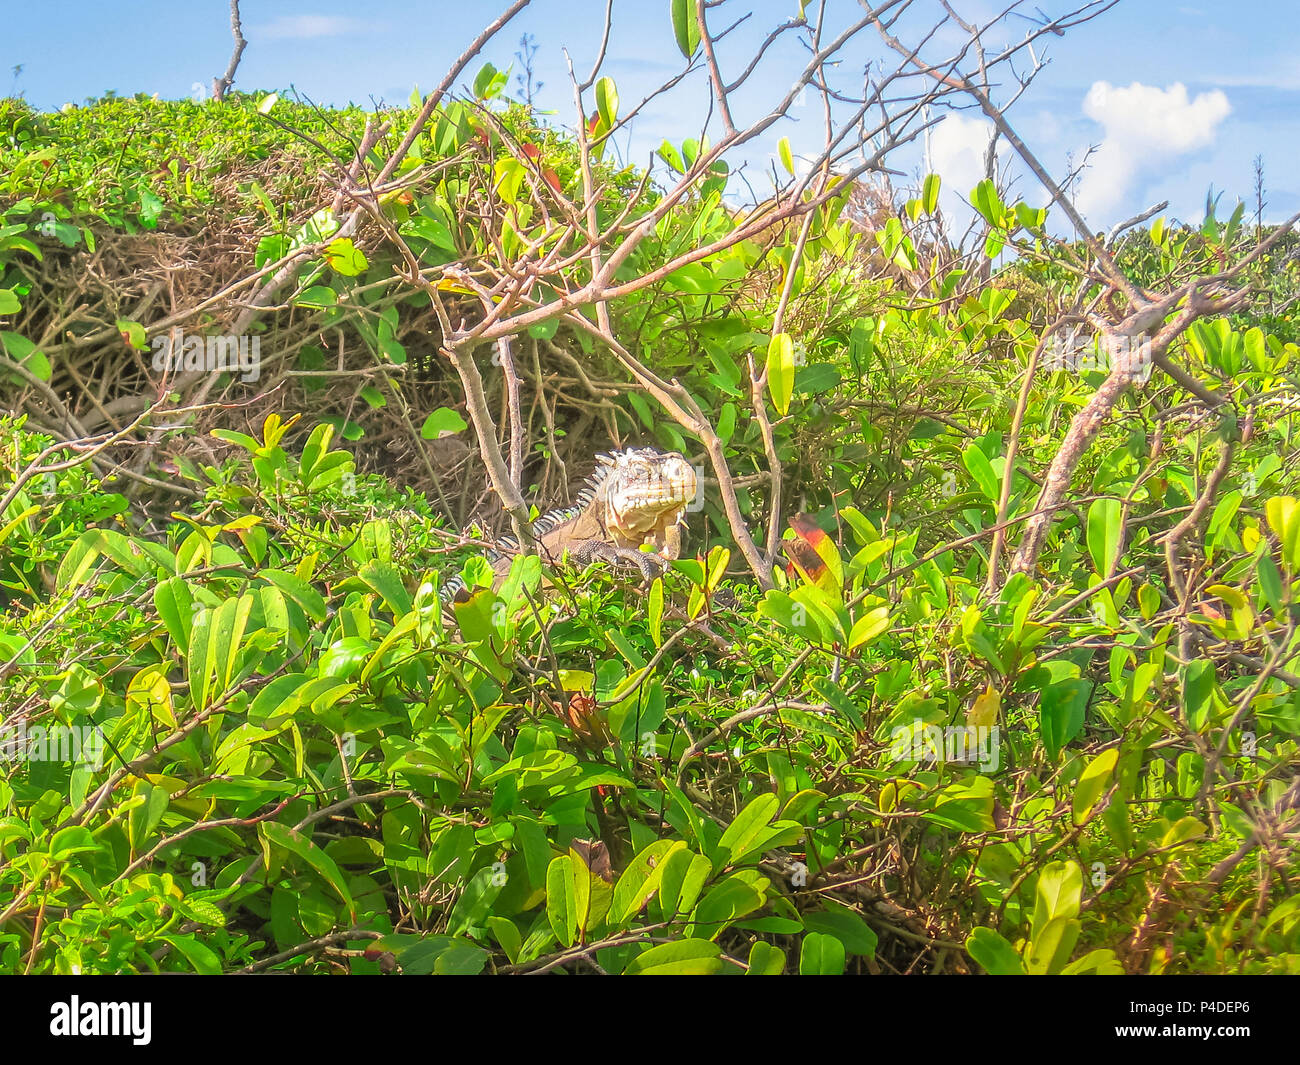 Leguan auf tropischen Wald in Französische Antillen. La Desirade gefeiert für seine iguana Bevölkerung. Die Insel hat eine Naturpark deklariert wurde. Guadeloupe Archipel, französische Karibik. Stockfoto